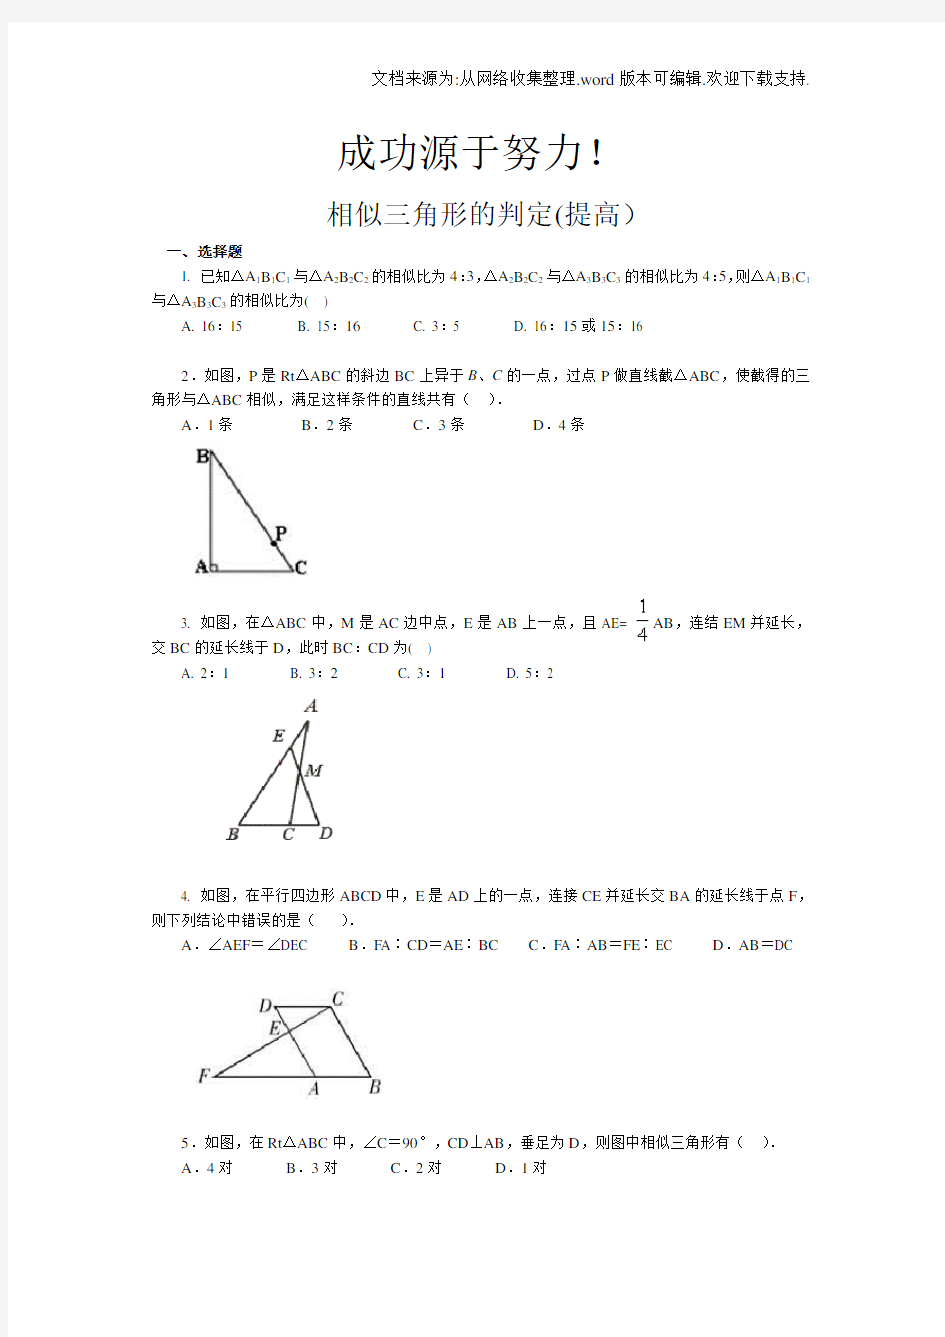 相似三角形判定练习题